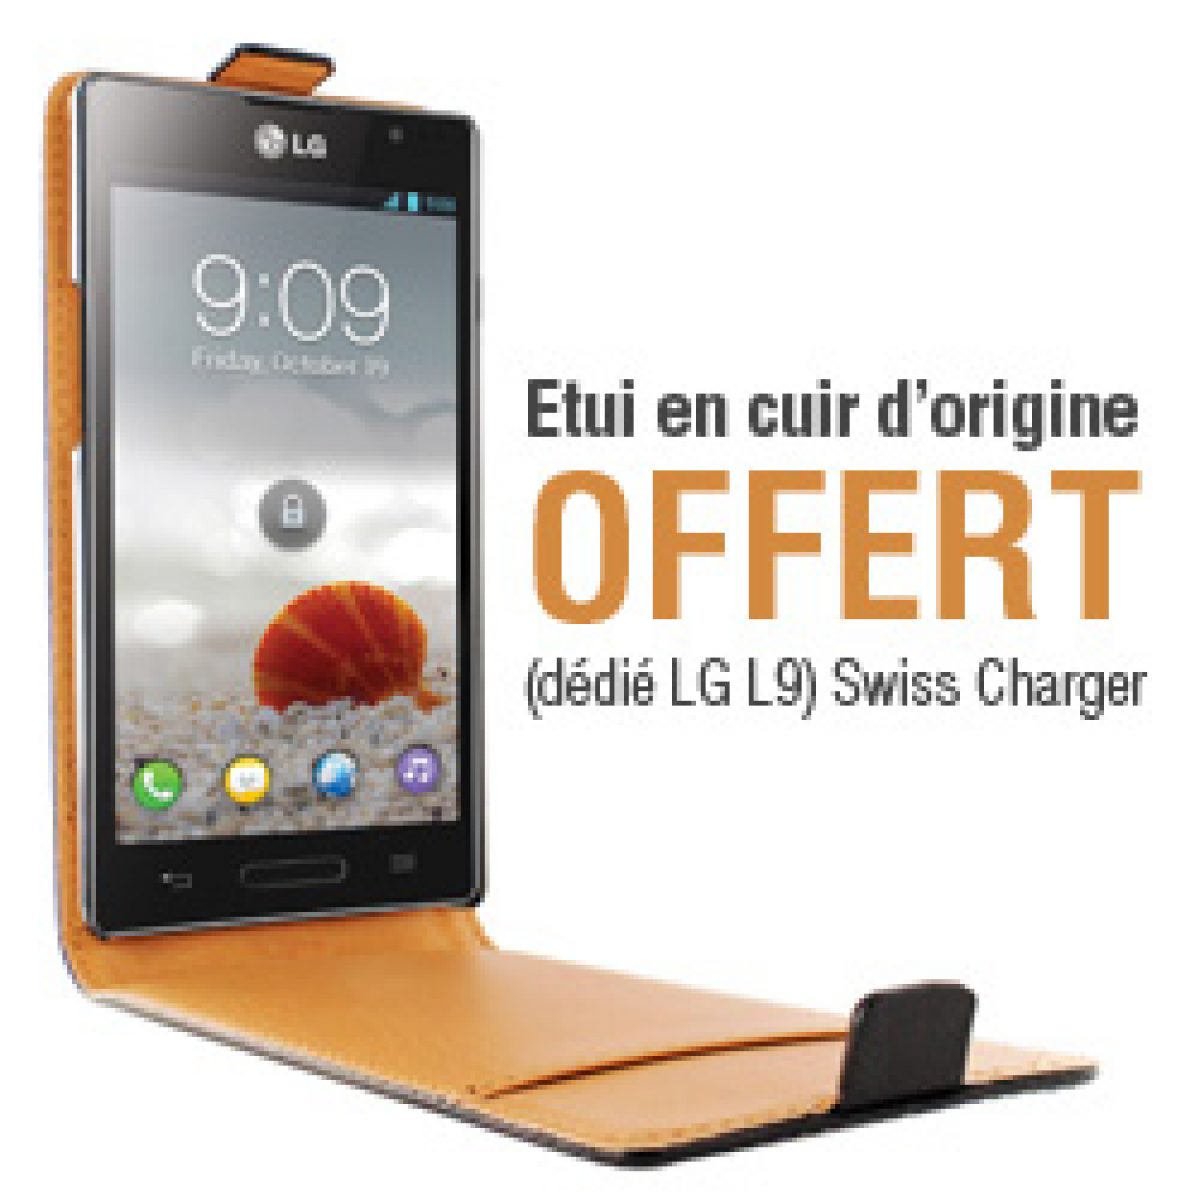 Free Mobile : un étui en cuir offert pour tout achat d’un LG Optimus L9